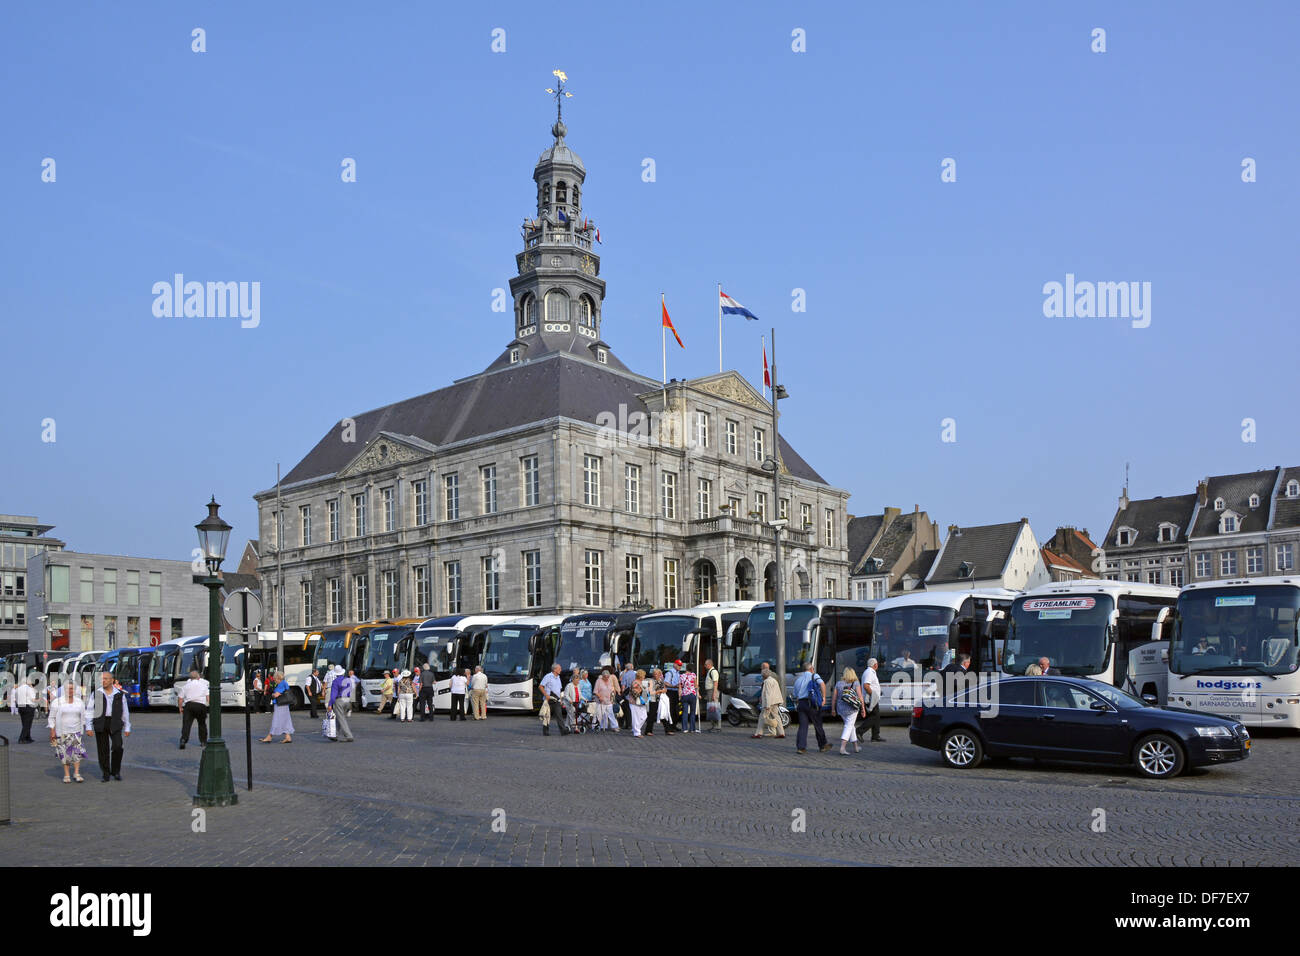 Maastricht City UK Reisebusse und Fahrer parkten das historische Rathaus und transportierten Touristen zu André Rieu und seinem Orchester im Sommer Abend Konzert im Freien Stockfoto